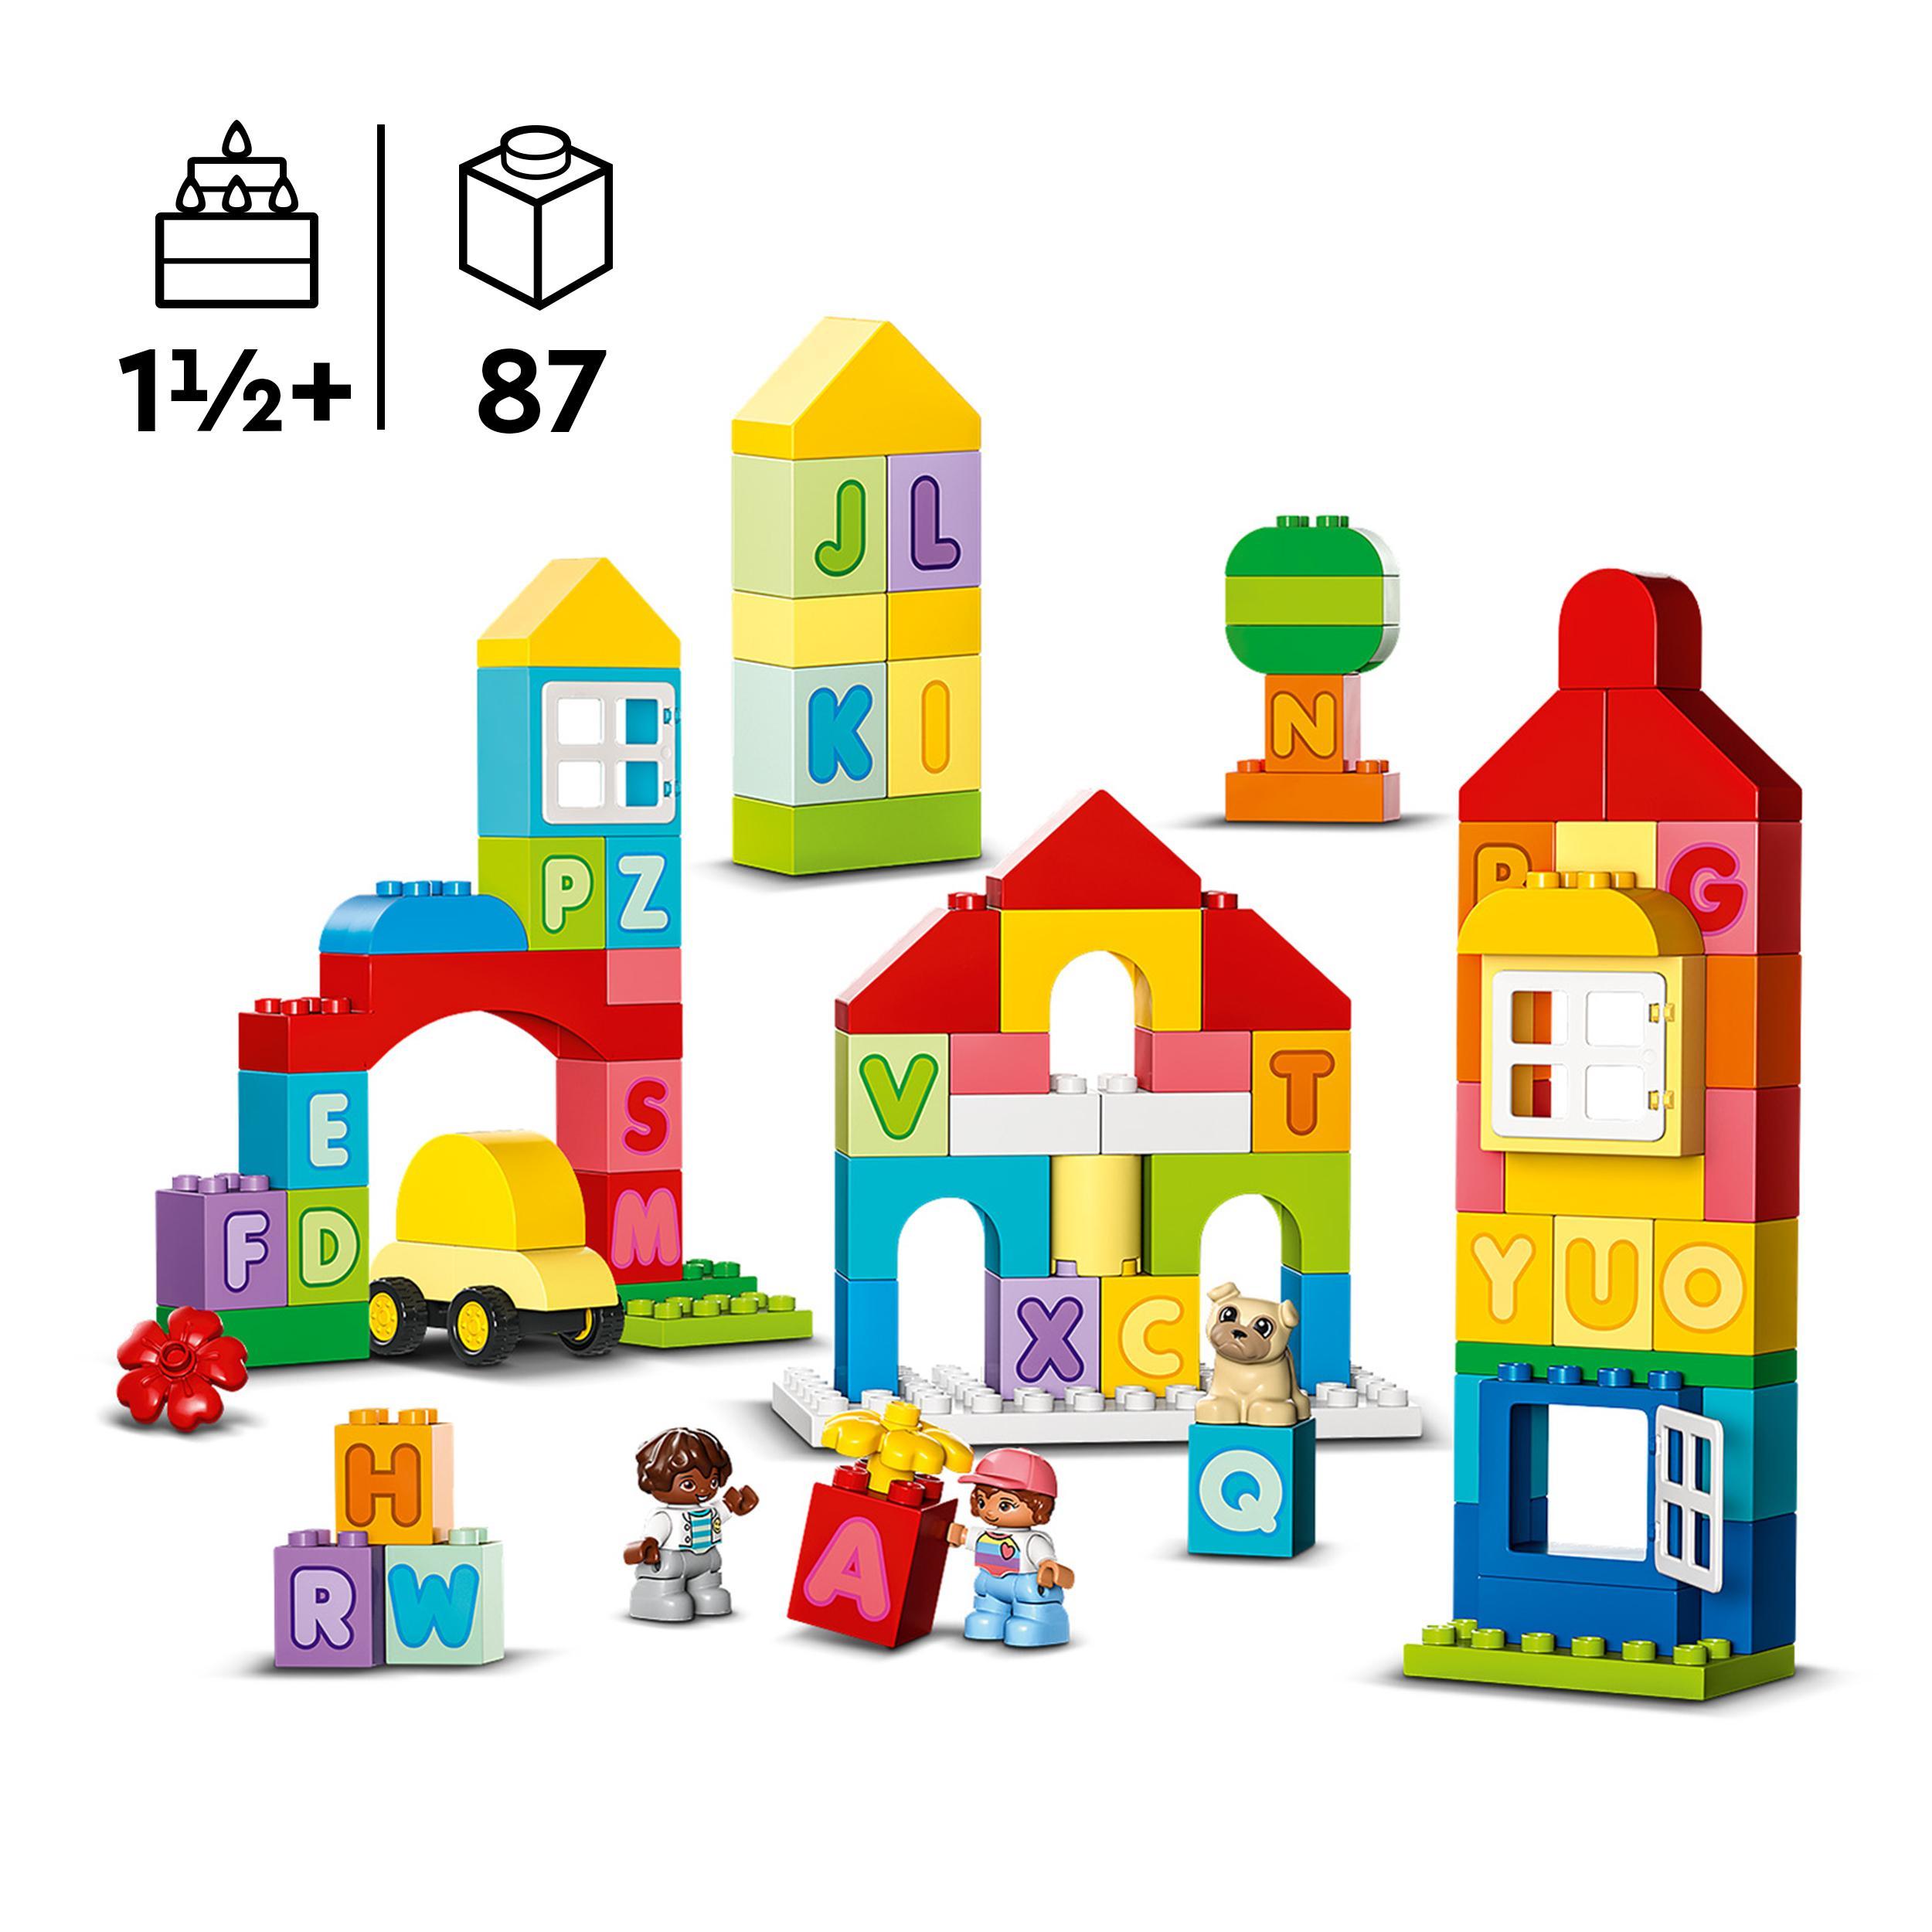 Lego duplo classic 10935 città dell’alfabeto, giochi educativi per bambini da 1,5 anni in su con costruzioni mattoncini grandi - LEGO DUPLO